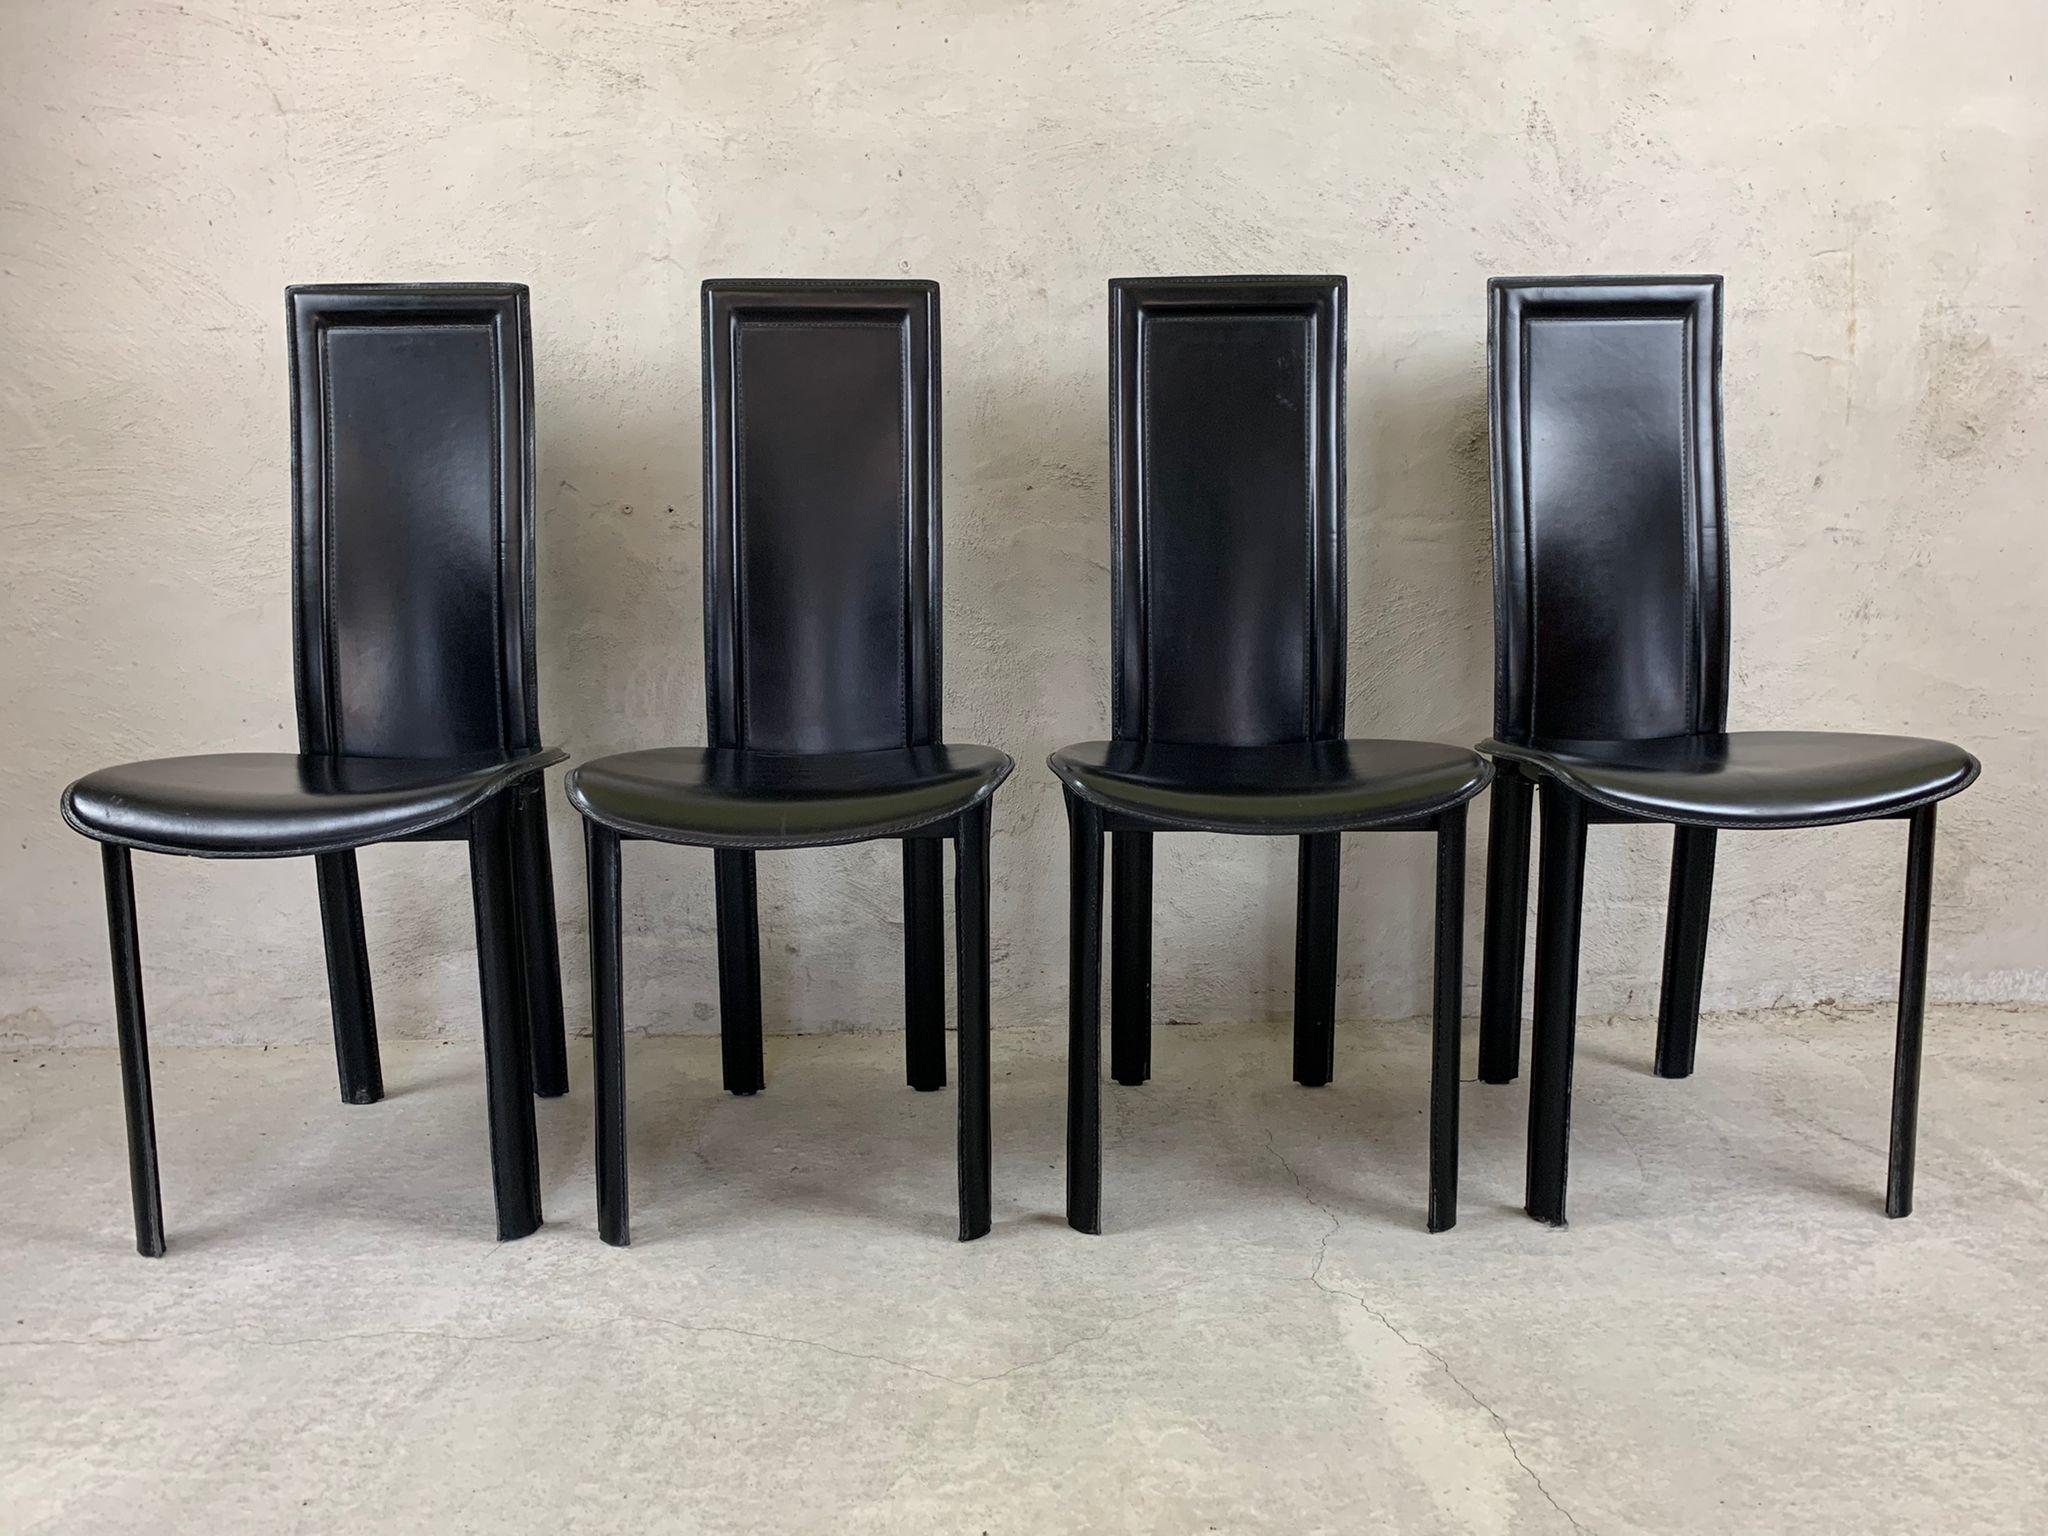 Satz von 8 schwarzen italienischen Lederstühlen mit hoher Rückenlehne.

schönes, schlankes und zeitloses Design.

Die Stühle sind in gutem Zustand mit minimalen Gebrauchsspuren.

1980er Jahre - Italien
